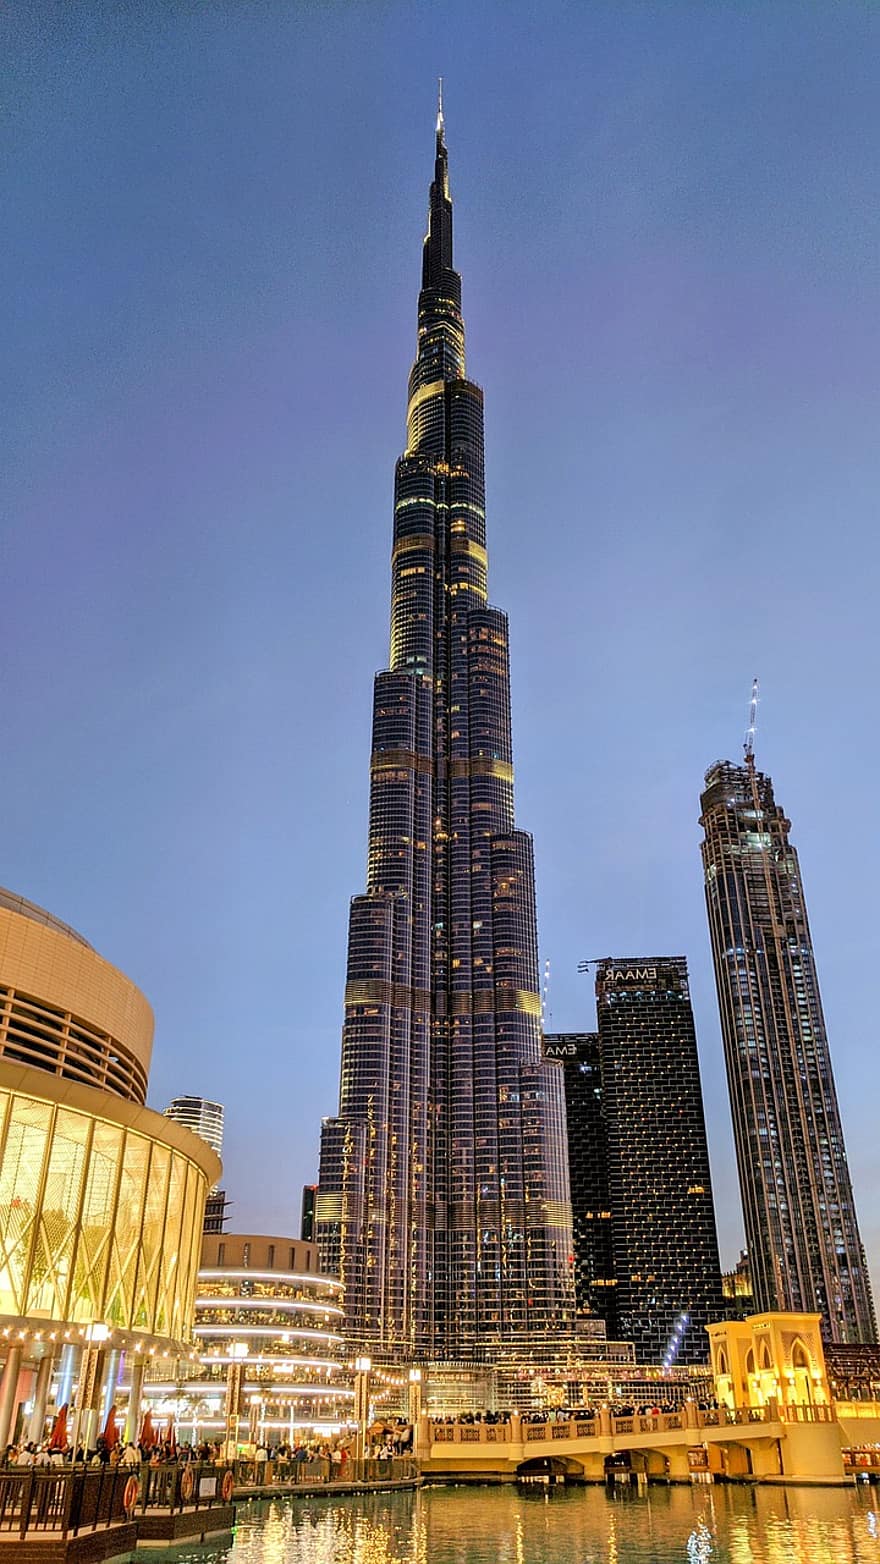 Stadt, Reise, Dubai, Tourismus, Gebäude, die Architektur, Burj Khalifa, Burj Dubai, Emirate Vereinigte Arabische Emirate, Wolkenkratzer, Dubai Einkaufszentrum